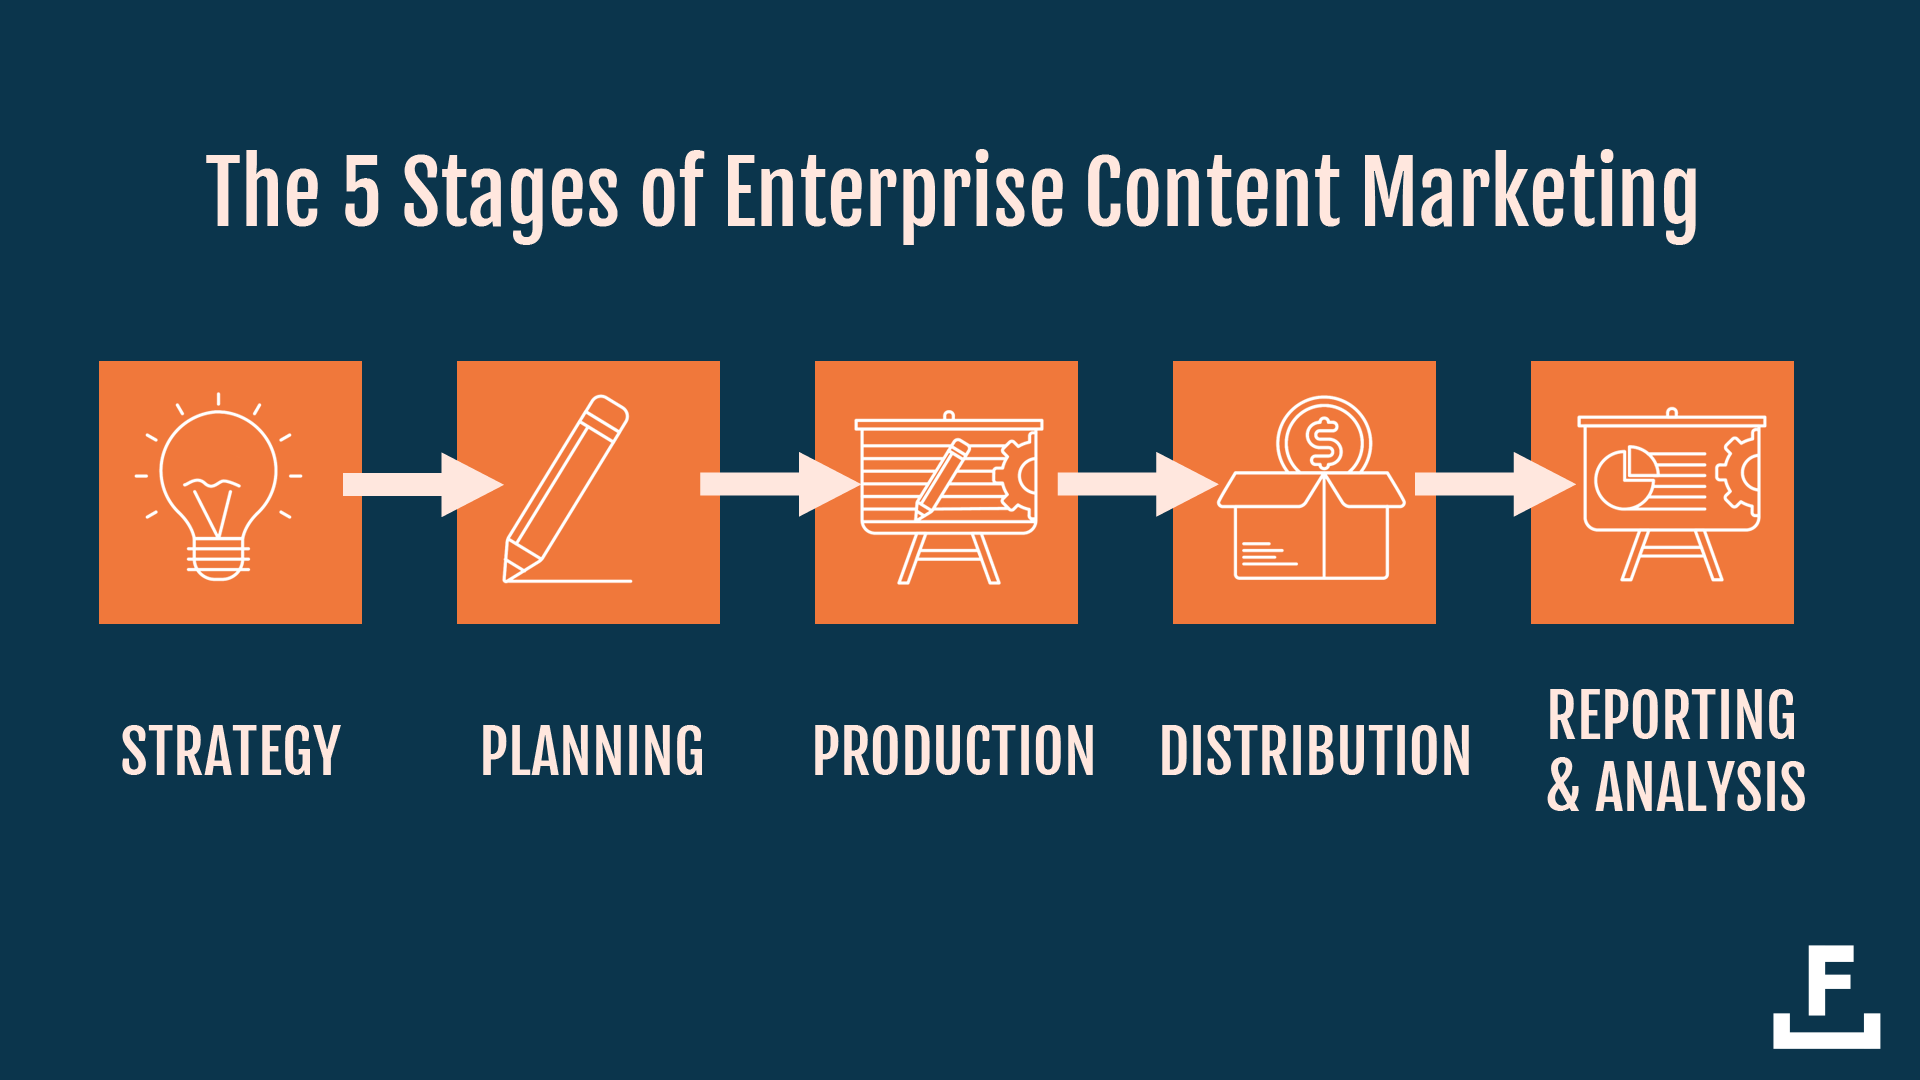 企業層面的內容產品，需要經歷5個階段：策略、規劃、製作、分發、分析